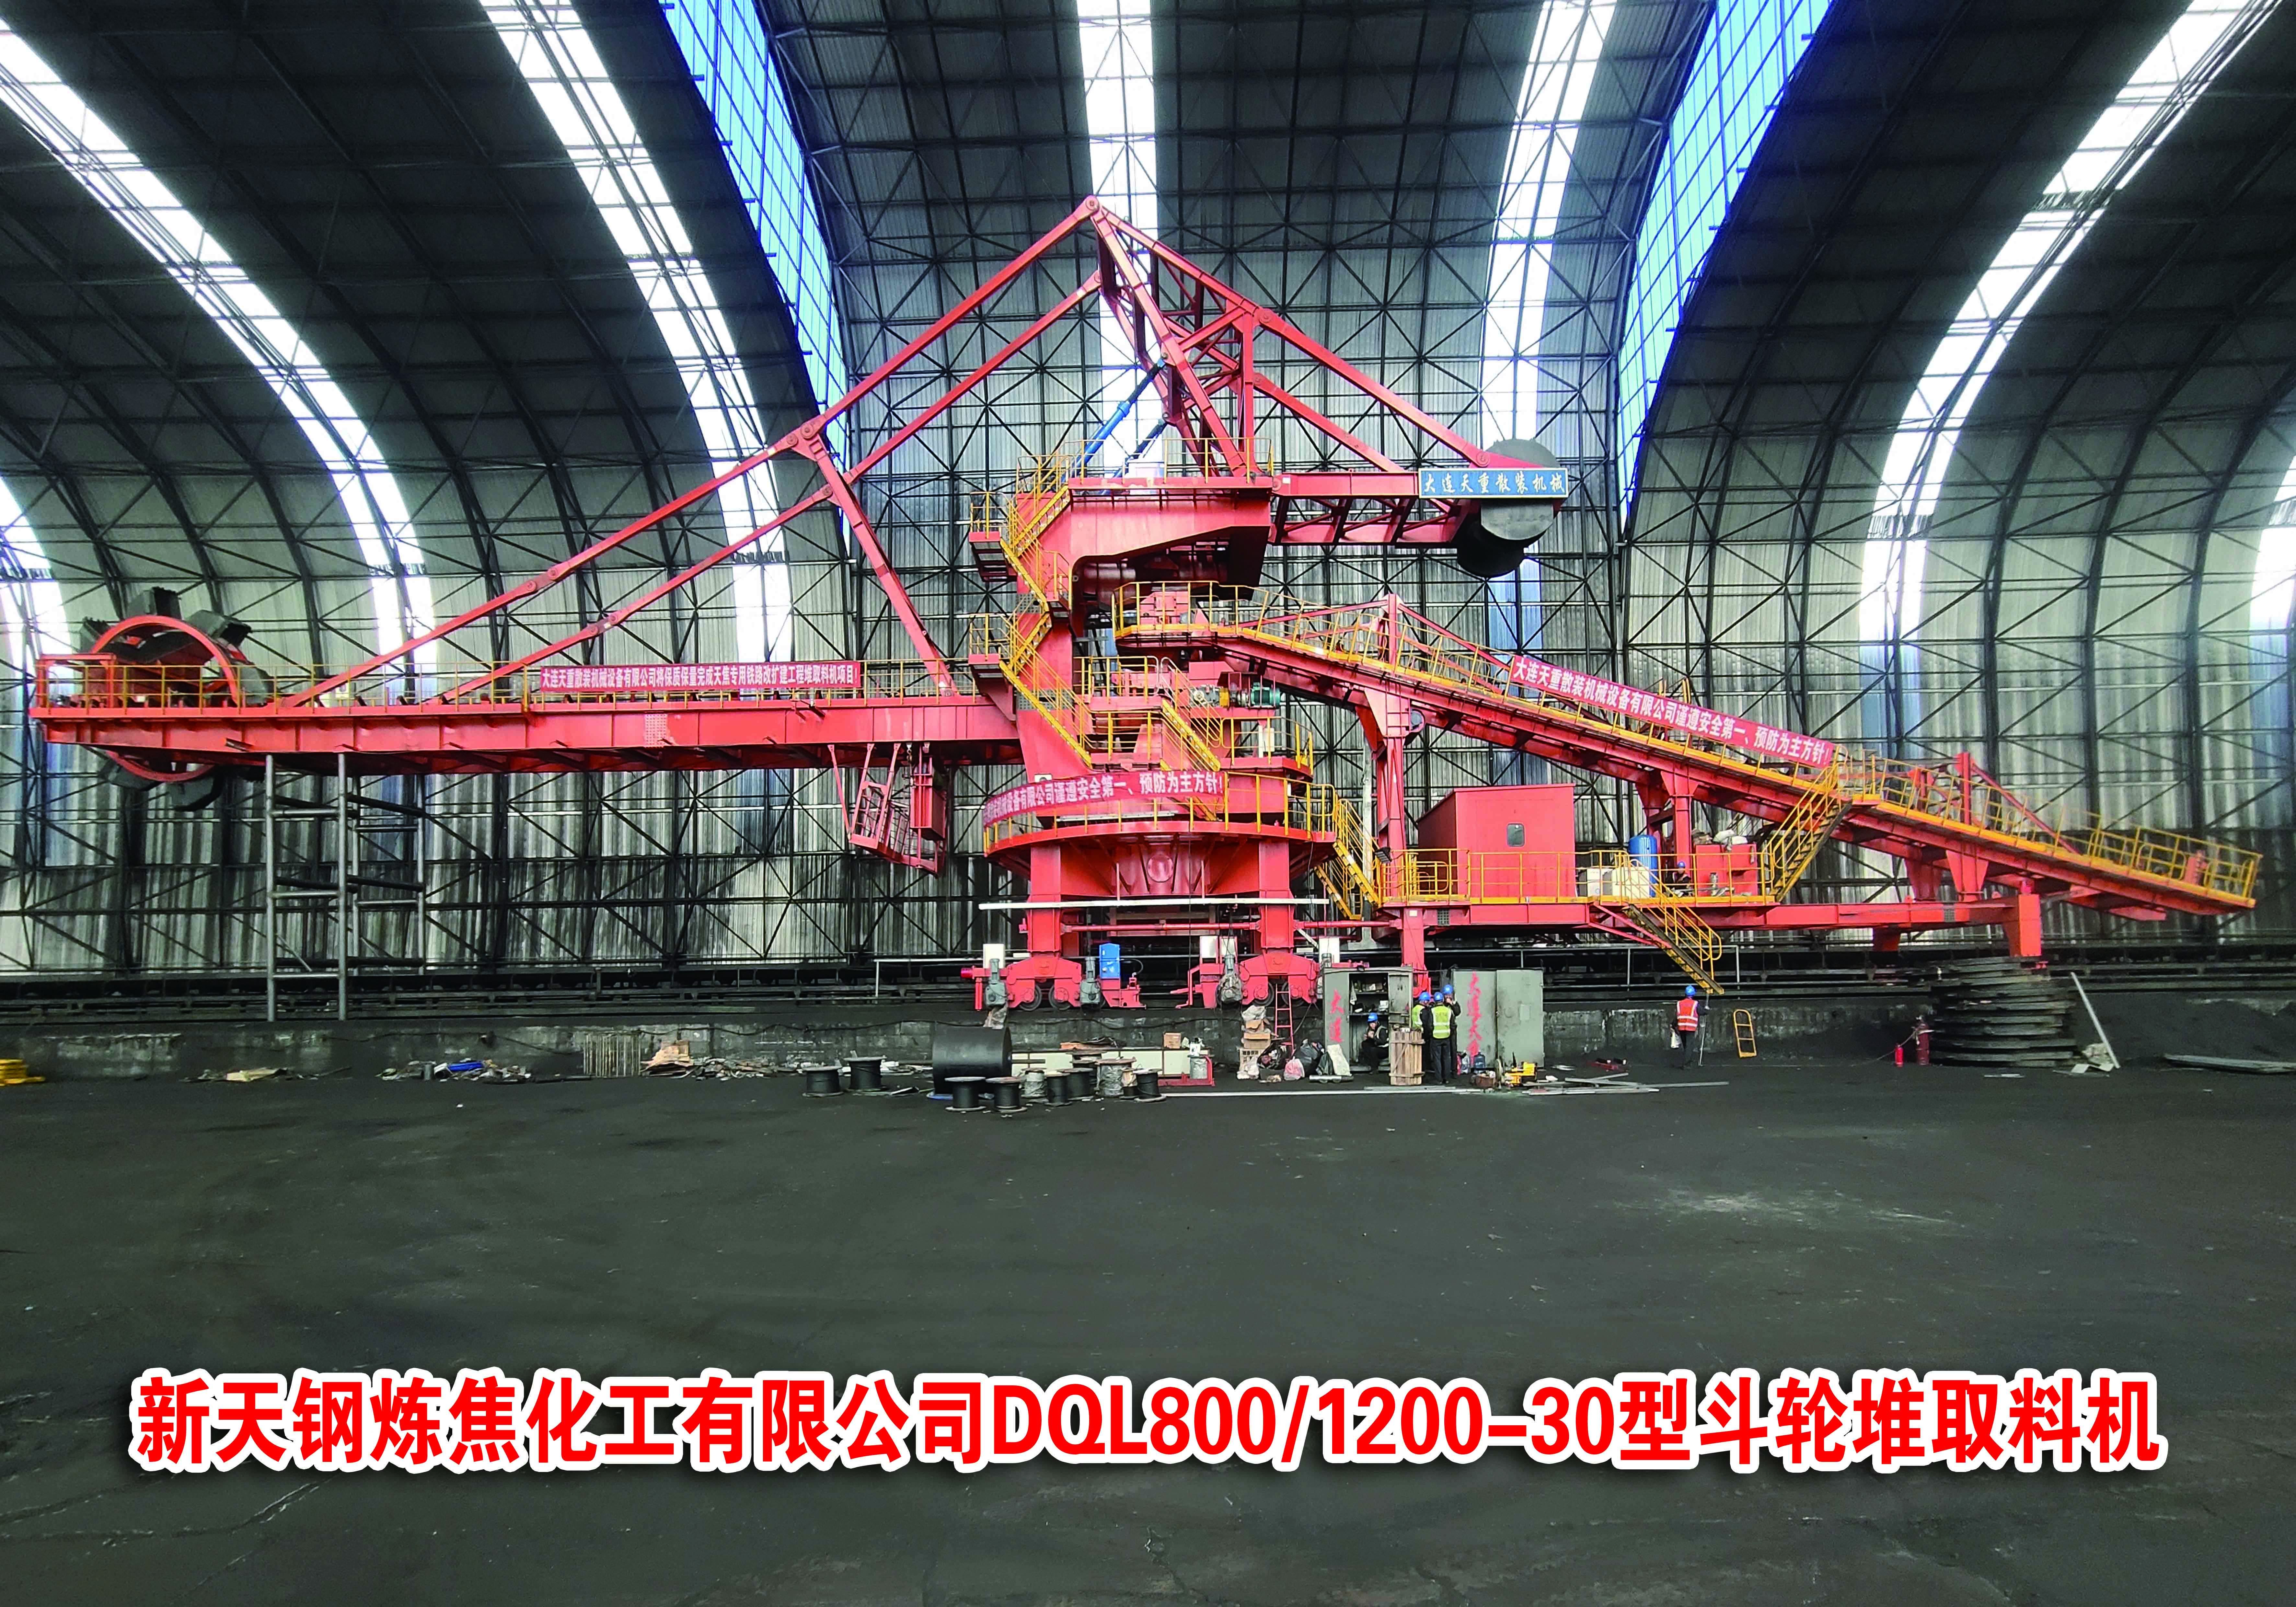 新天钢炼焦化工有限公司DQL800/1200-30型斗轮堆取料机